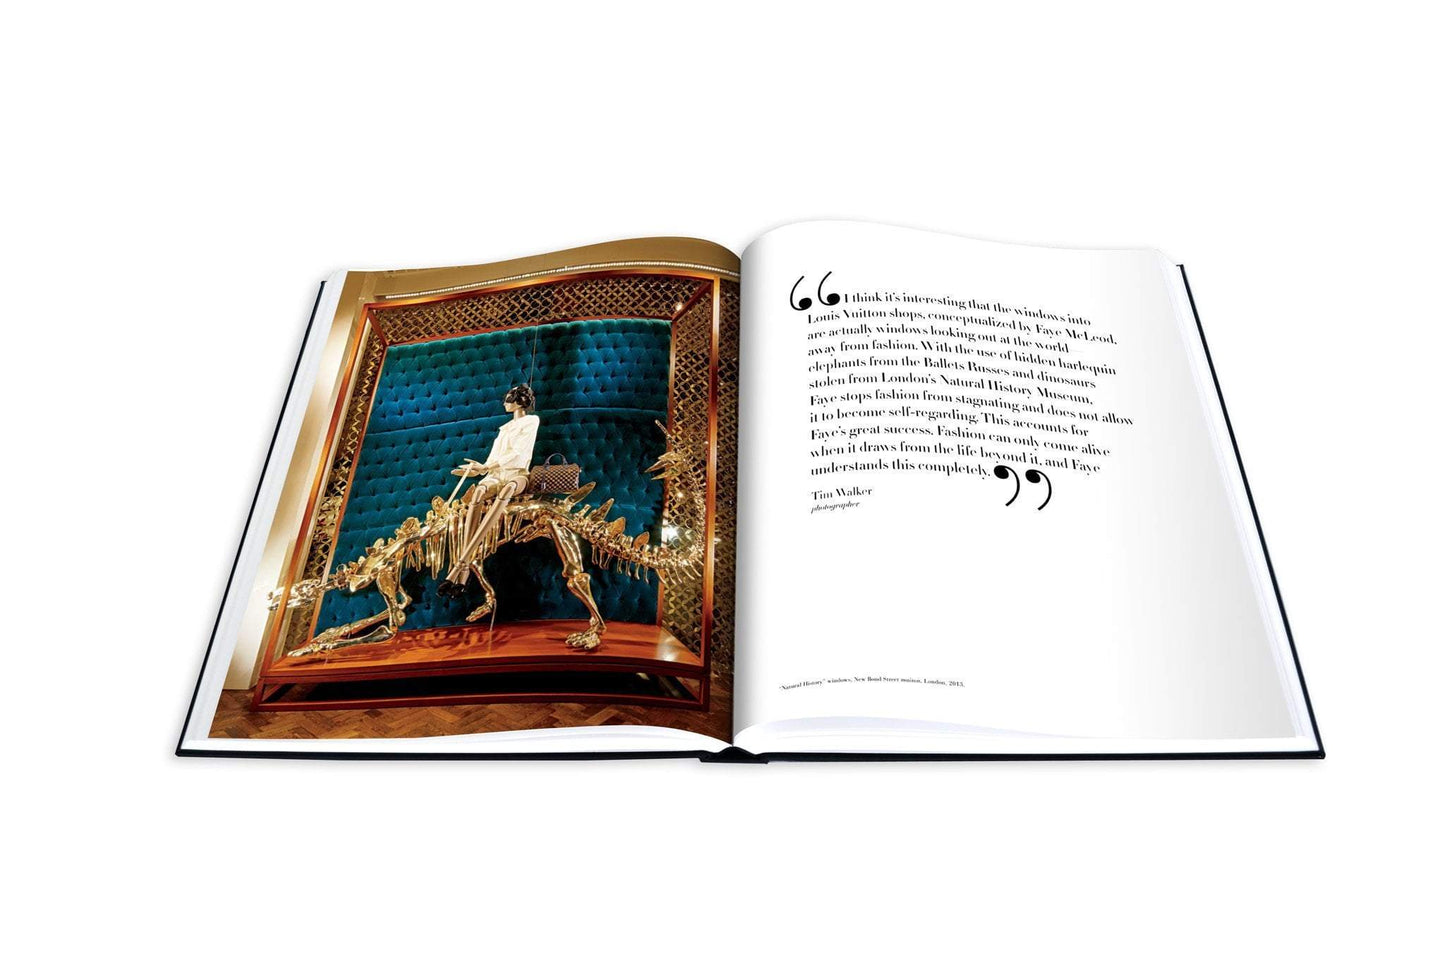 Livre Louis Vuitton Windows: Impossible Collection